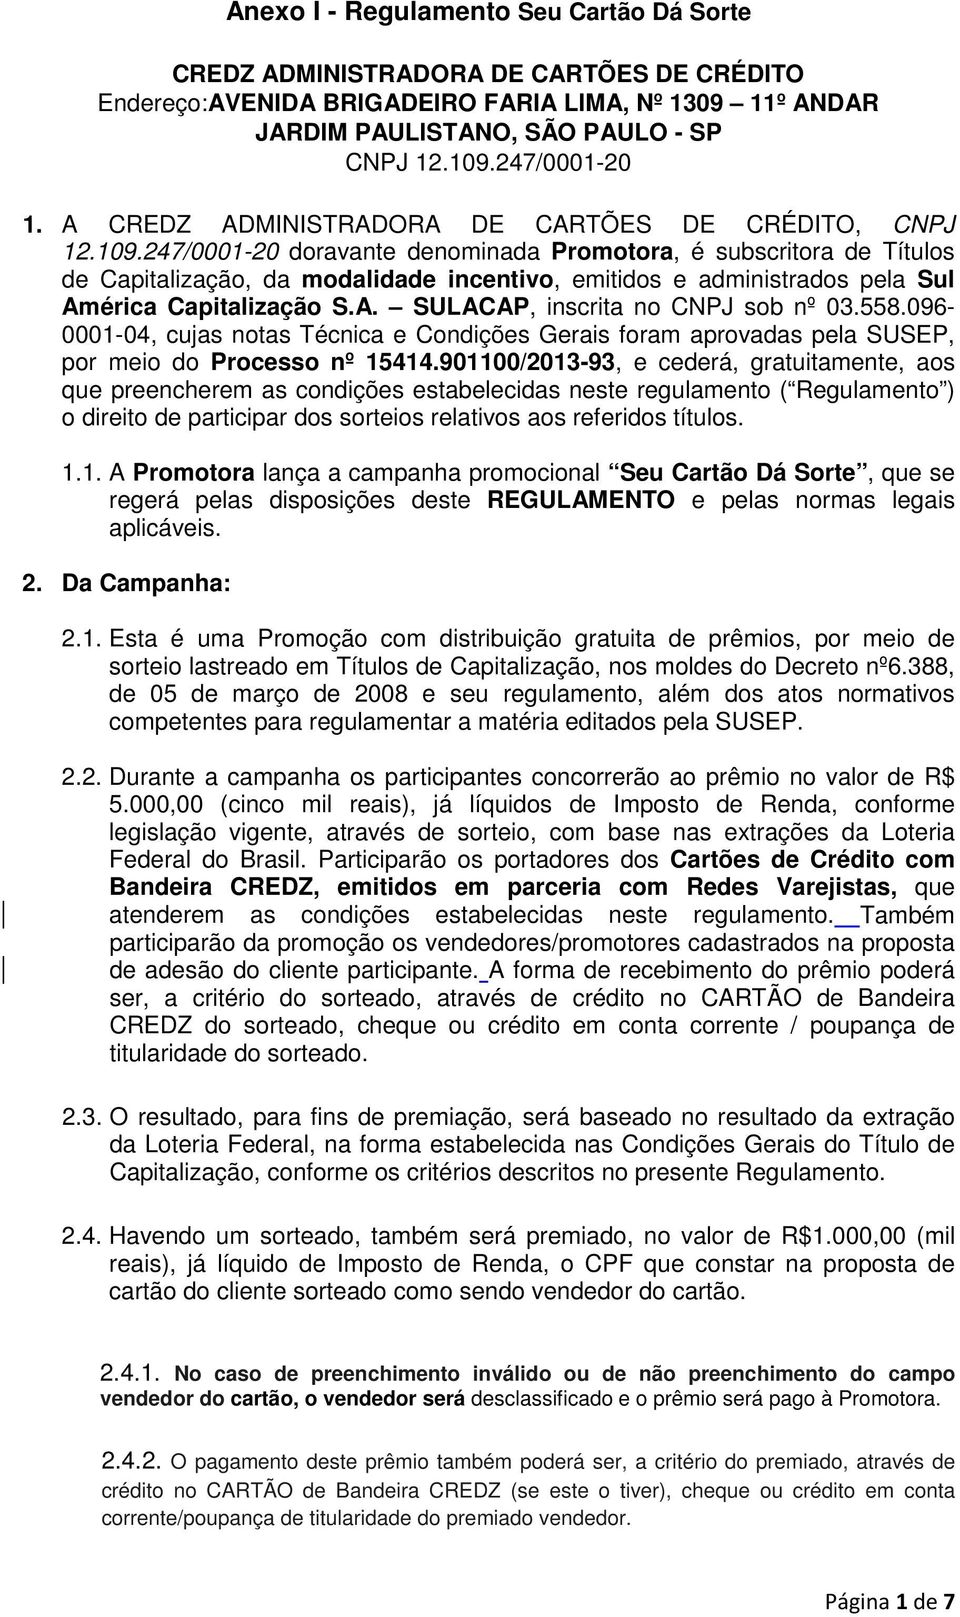 247/0001-20 doravante denominada Promotora, é subscritora de Títulos de Capitalização, da modalidade incentivo, emitidos e administrados pela Sul América Capitalização S.A. SULACAP, inscrita no CNPJ sob nº 03.